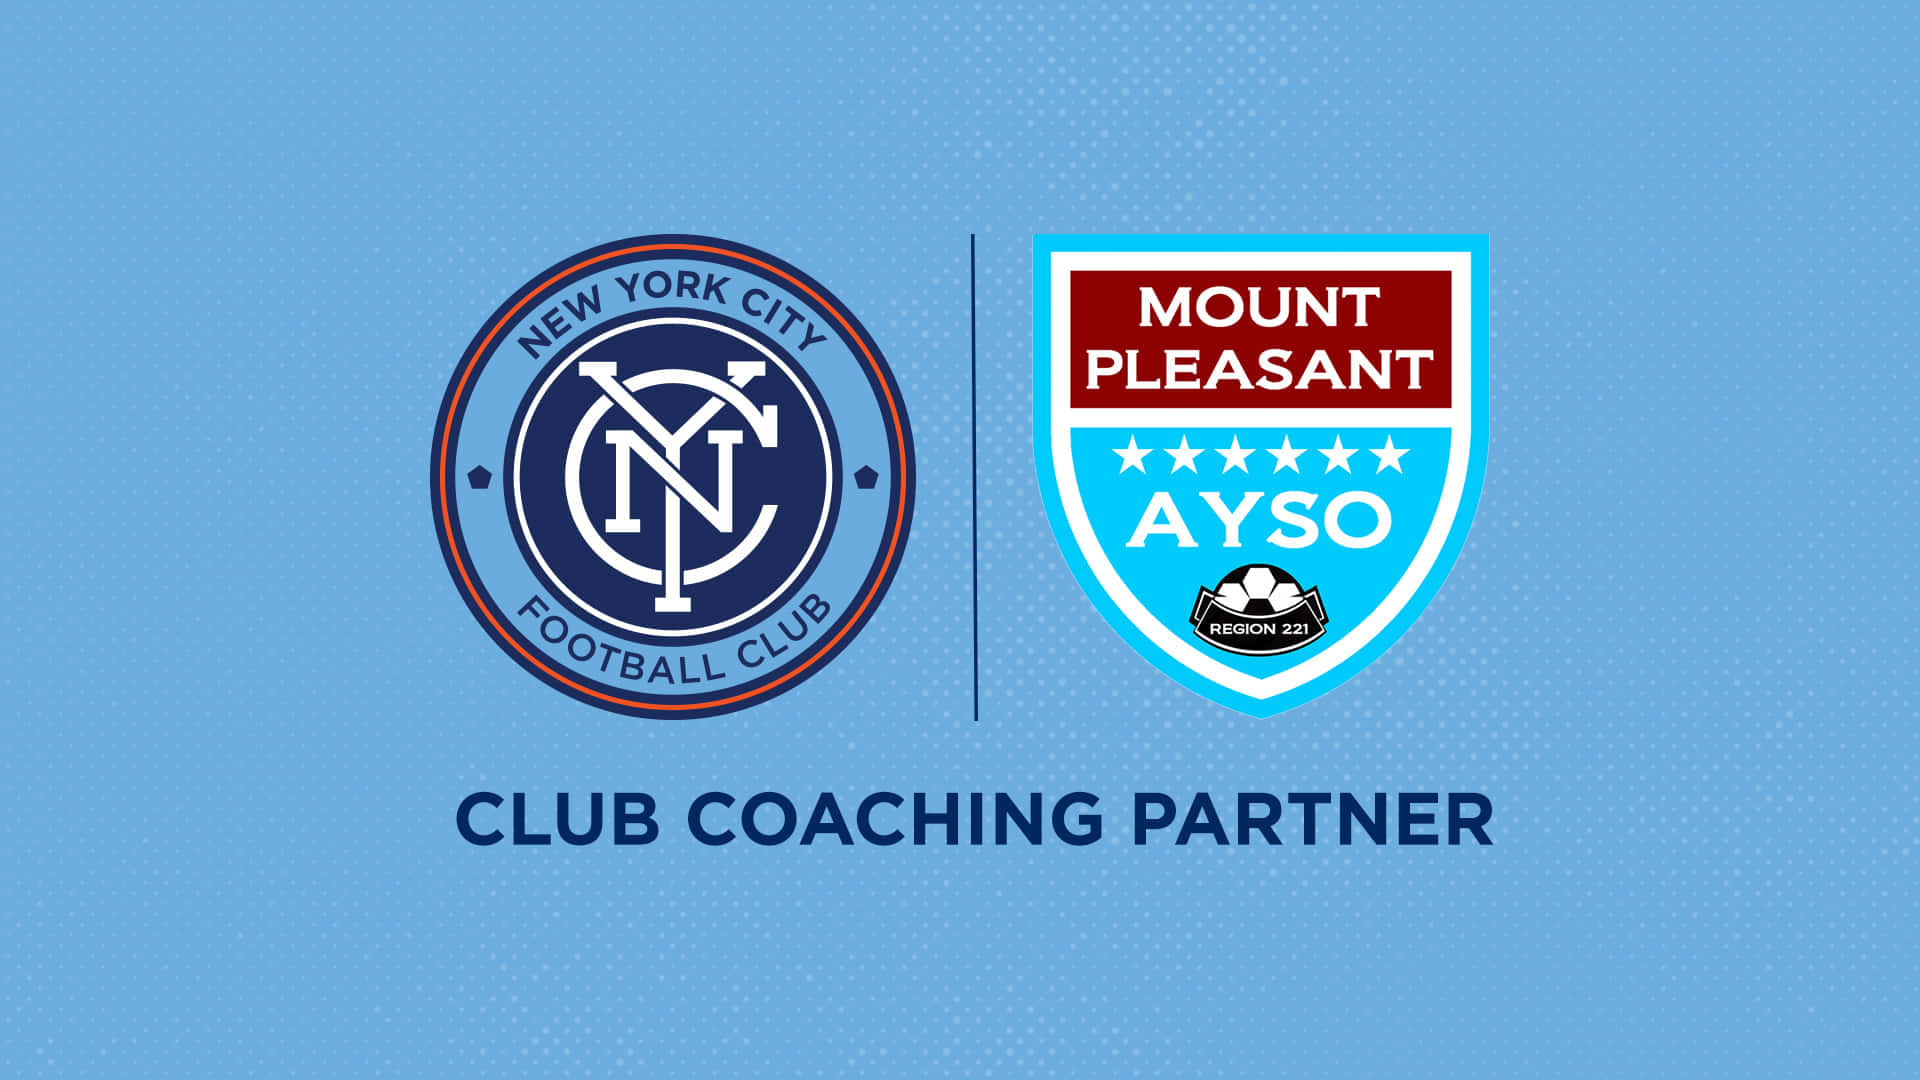 Nuevayork City Fc Y La Asociación Mount Pleasant Ayso, Una Alianza De Éxito. Fondo de pantalla